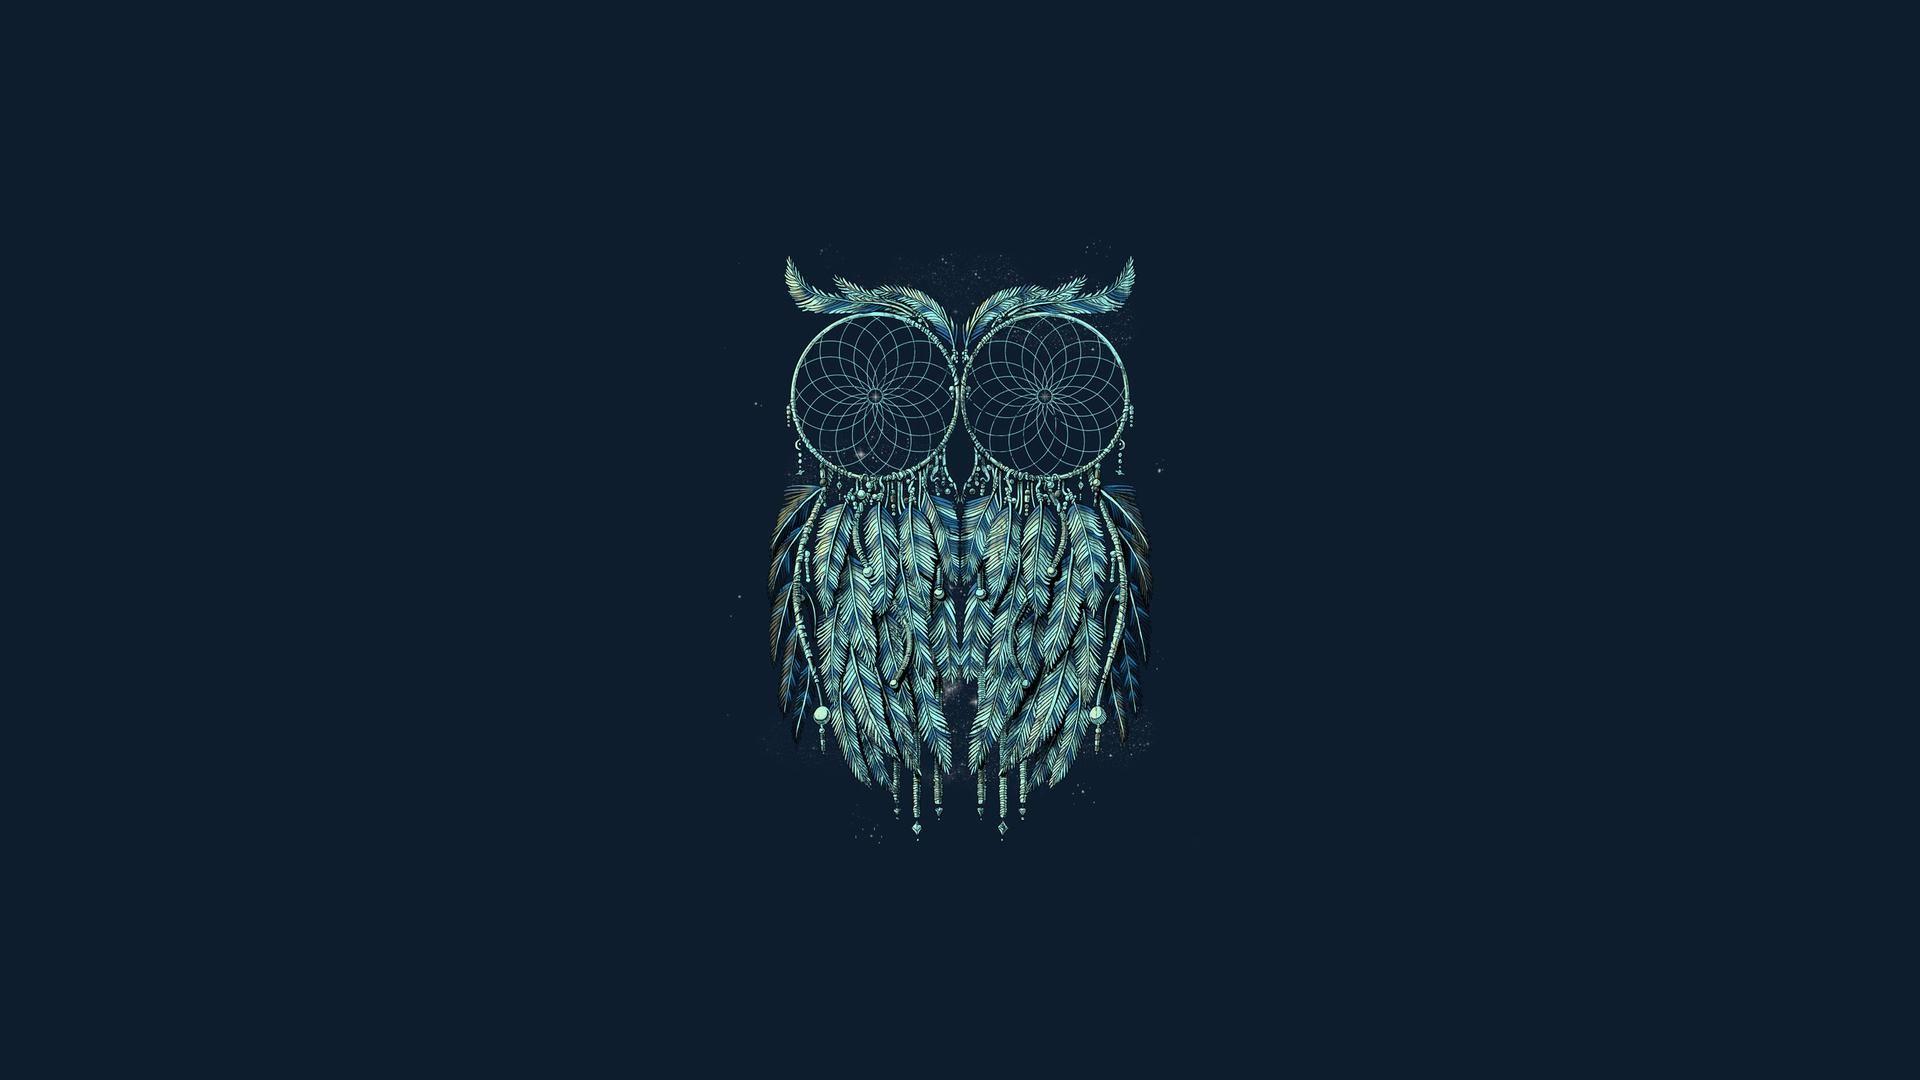 HD Owl dreamcatcher Wallpaper